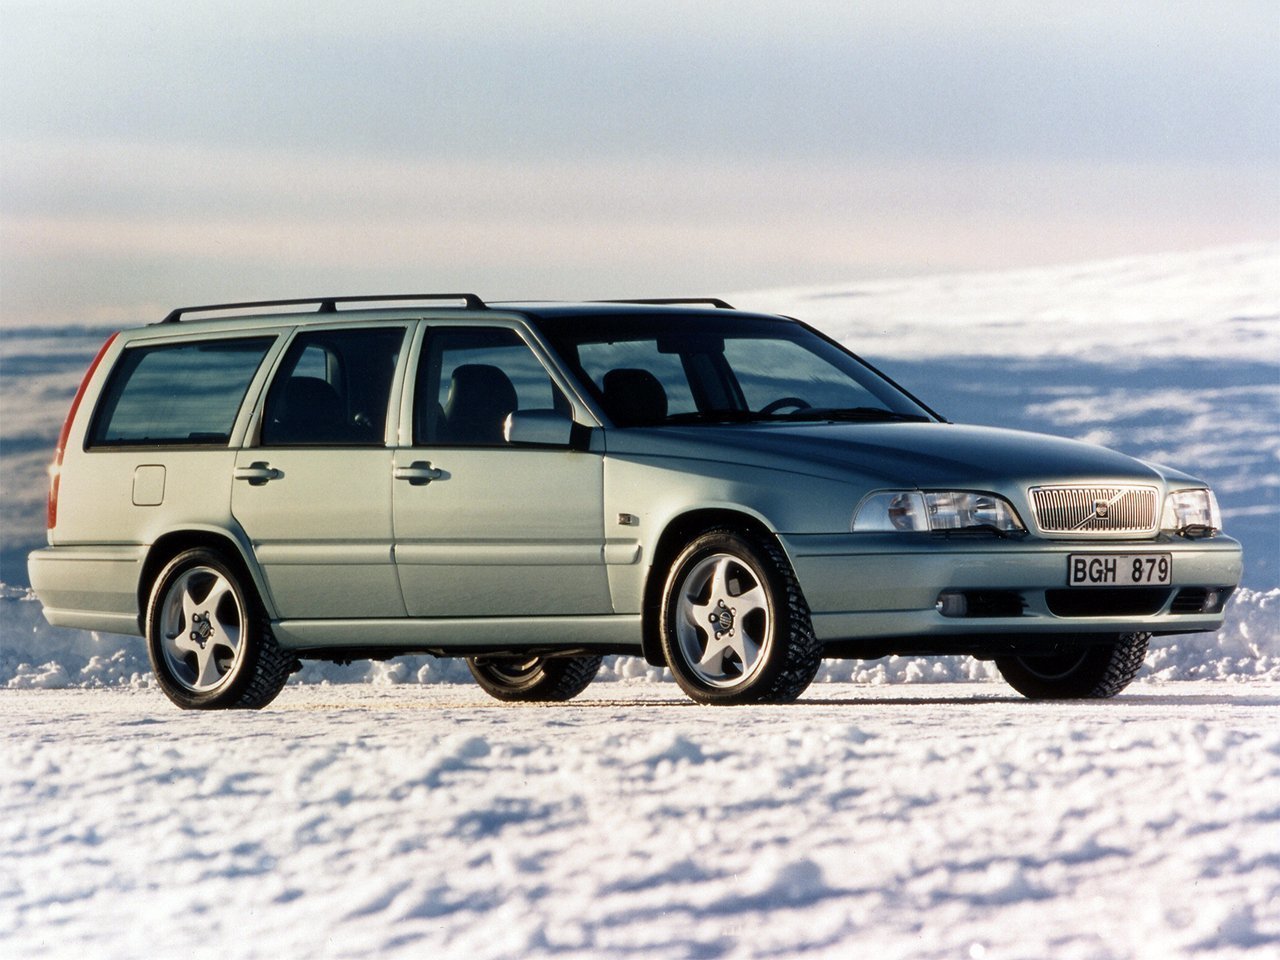 Расход газа шести комплектаций универсала пять дверей Volvo V70. Разница стоимости заправки газом и бензином. Автономный пробег до и после установки ГБО.